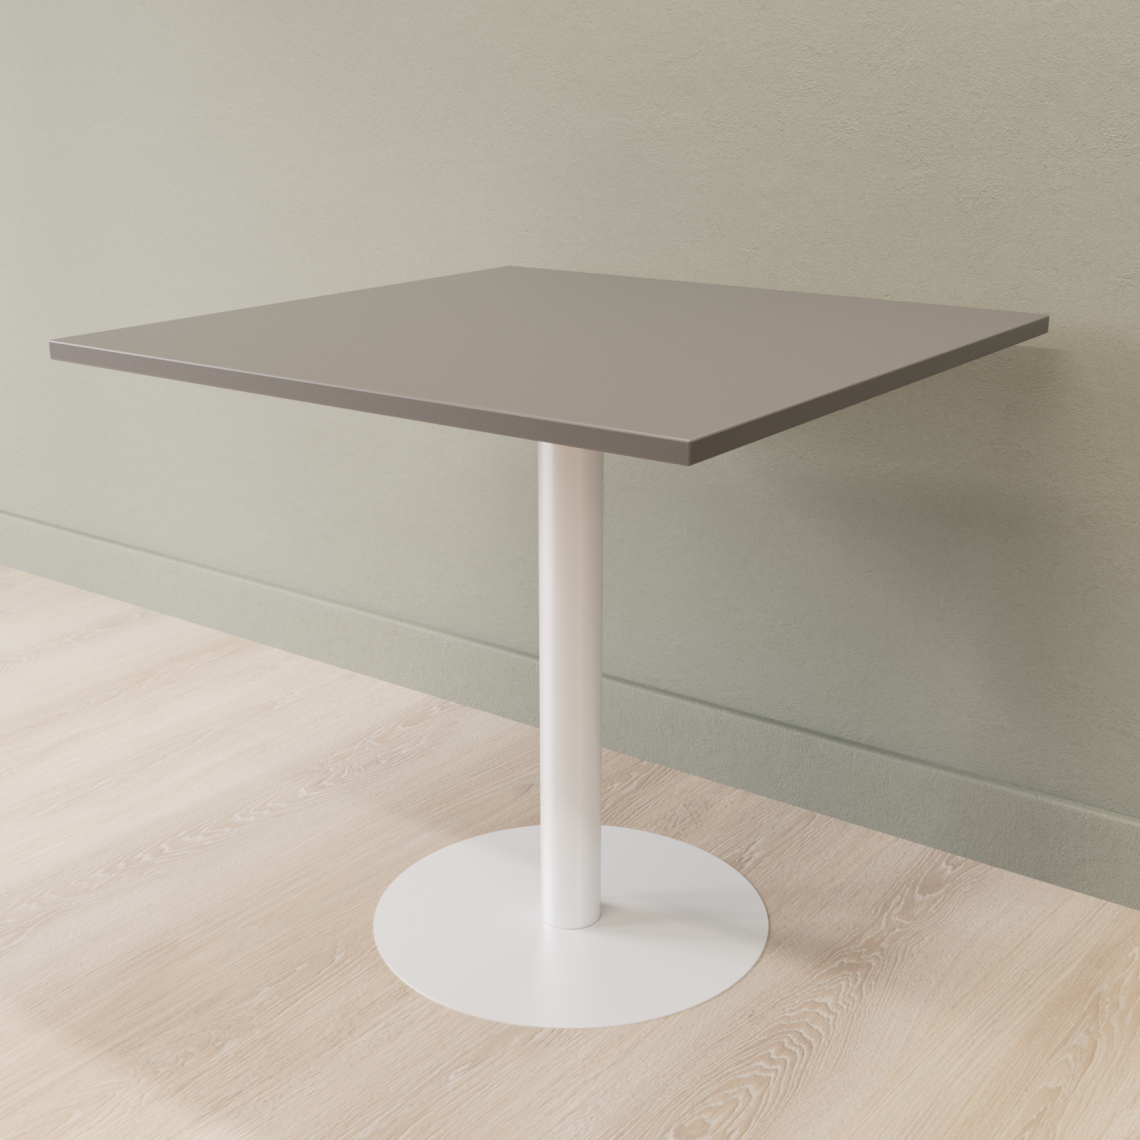 Cafebord med firkantet bordplade og rund fod, Størrelse 60 x 60 cm, Bordplade Mørkegrå, Stativ Hvid